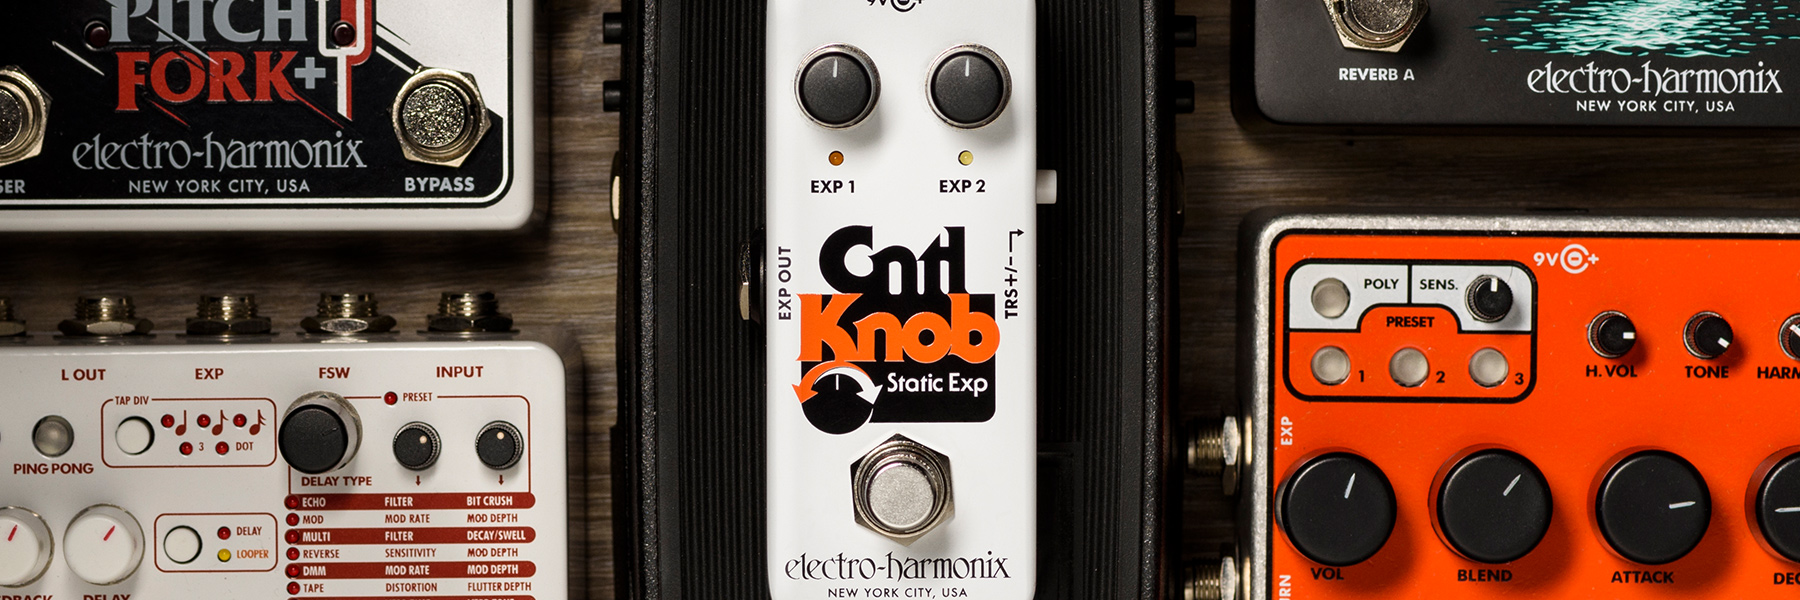 料無料 electro-harmonix Cntl Knob Static Expression Pedal 新品[エレクトロハーモニク  アクセサリー・パーツ